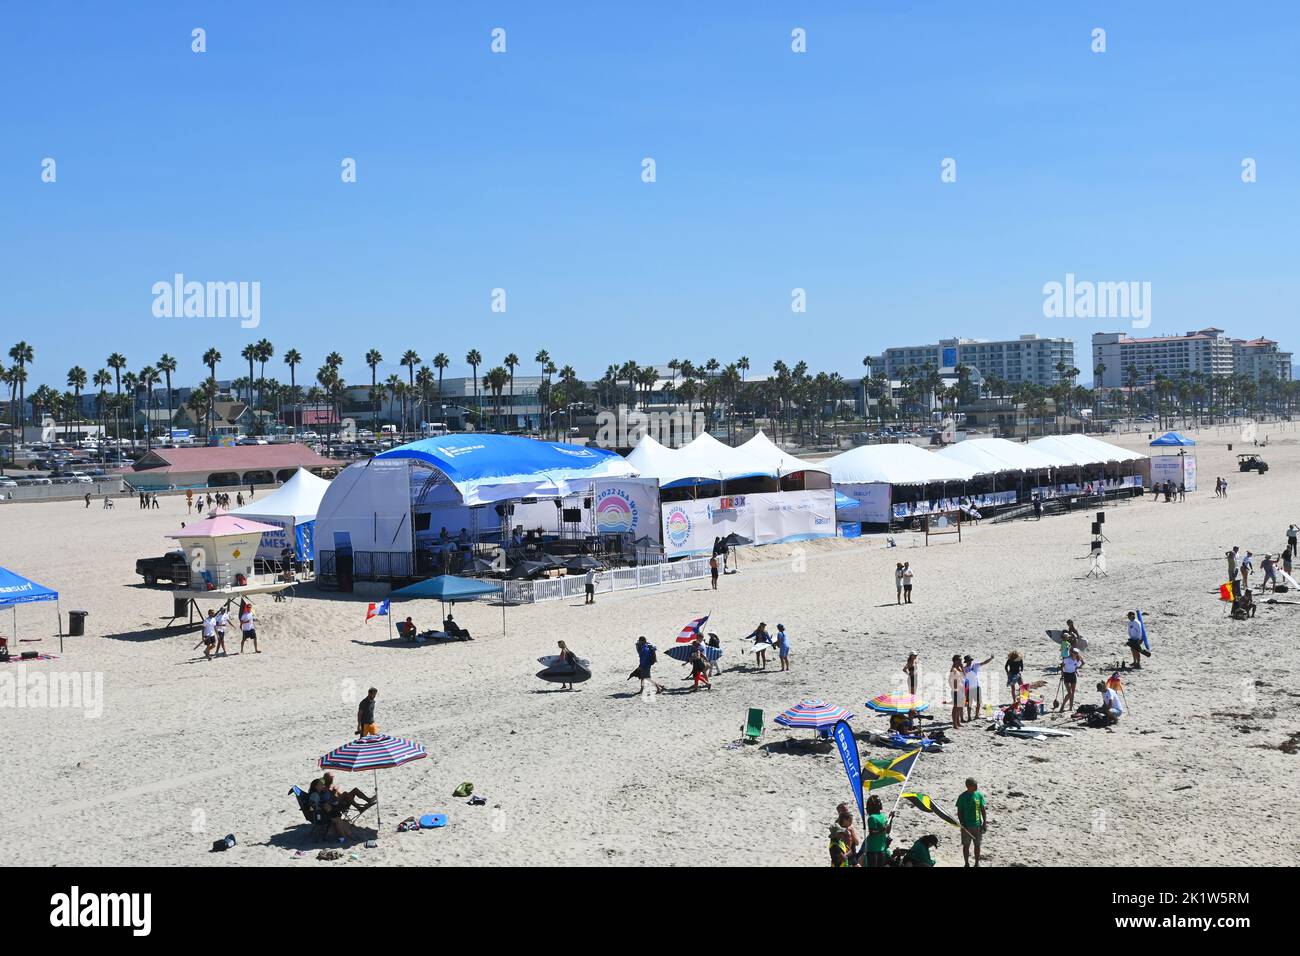 HUNTINGTON BEACH, KALIFORNIEN, 19. SEPTEMBER 2022: Zelte und Pop-ups für den Wettbewerb der International Surfing Association am Pier in Huntington Beach. Stockfoto